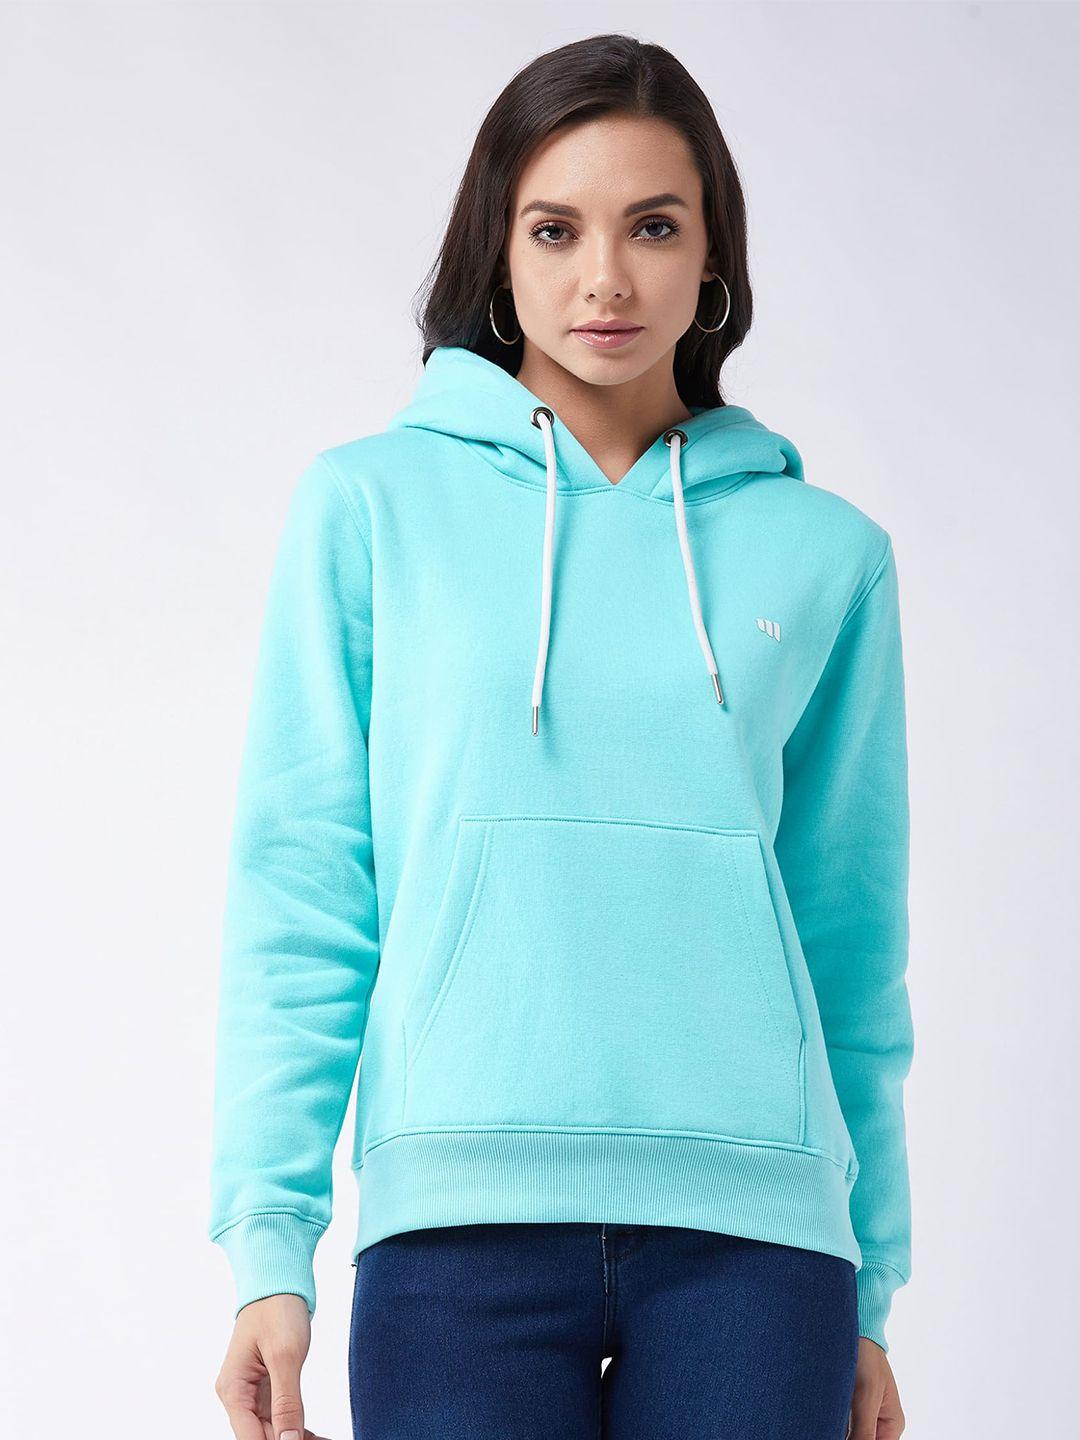 modeve women blue hooded sweatshirt